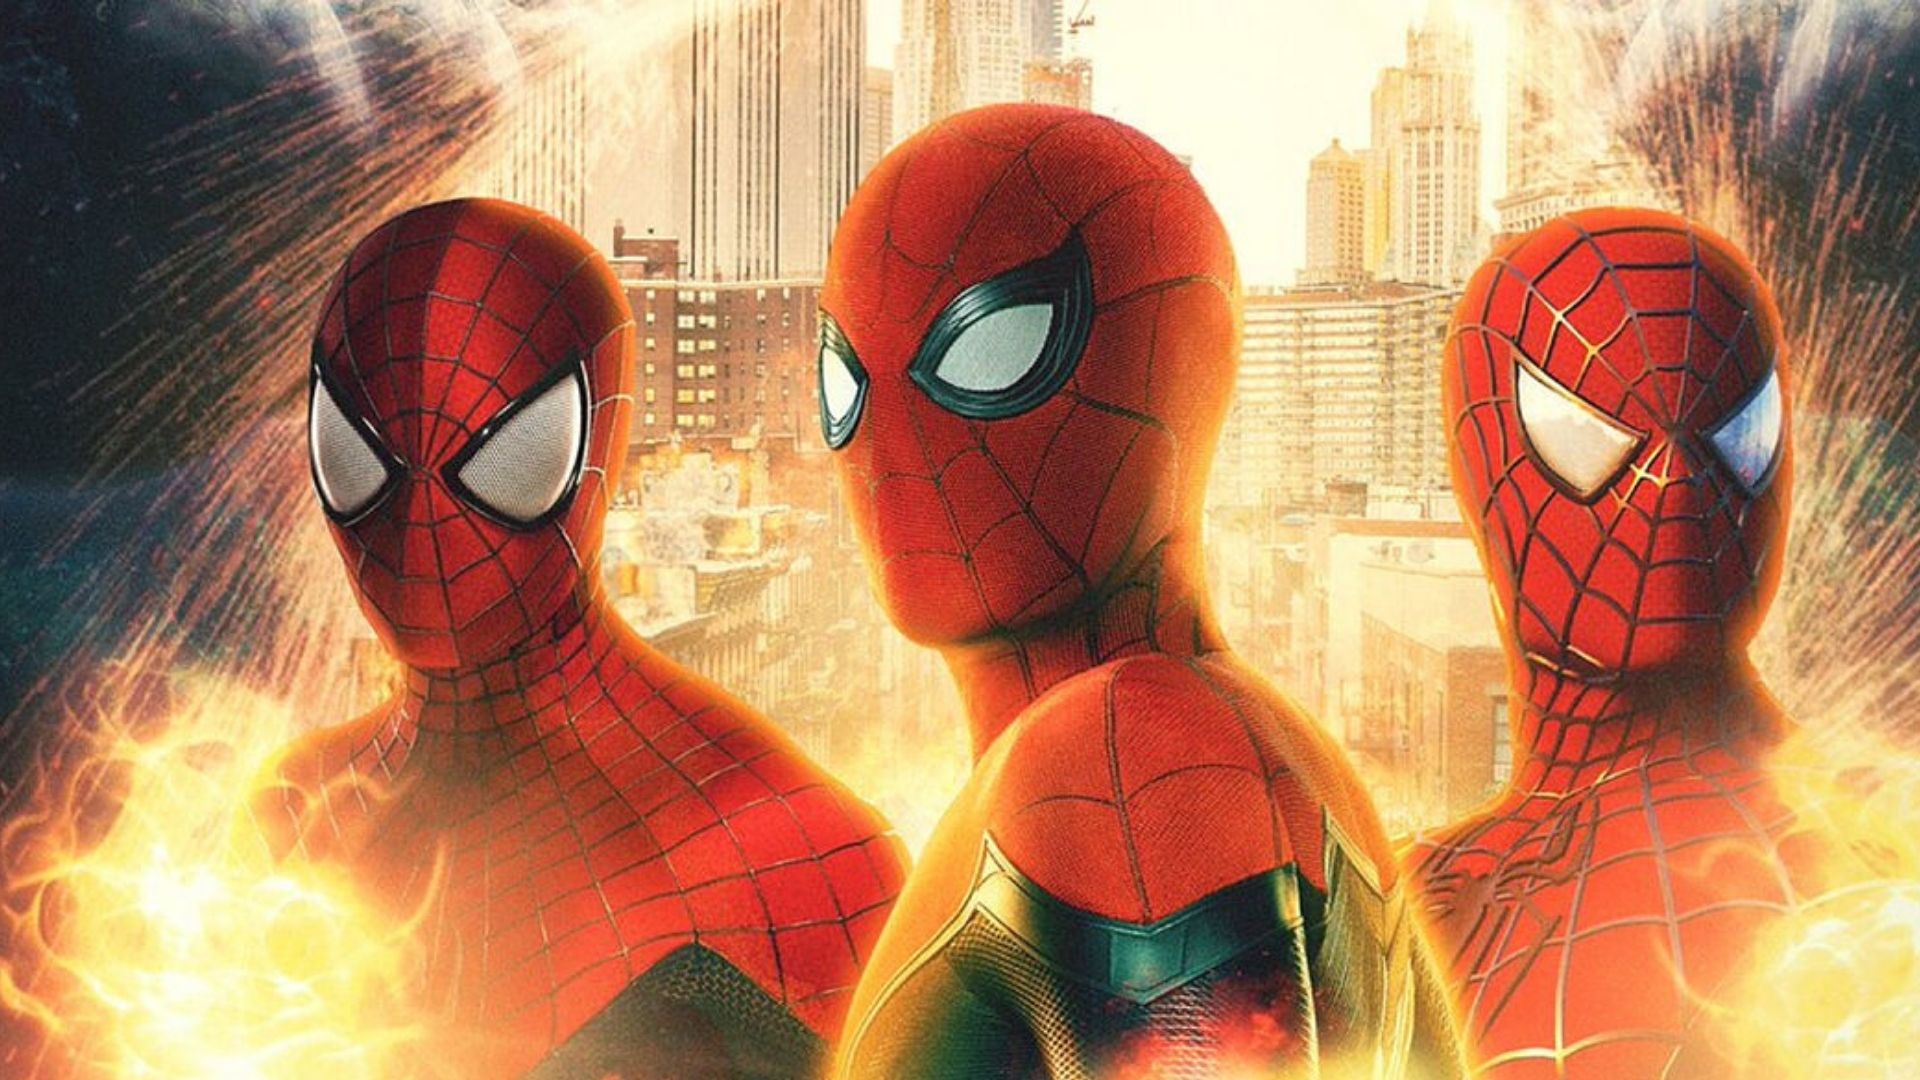 Holland, Maguire y Garfield se reunieron para una entrevista sobre la cinta Spiderman: No Way Home